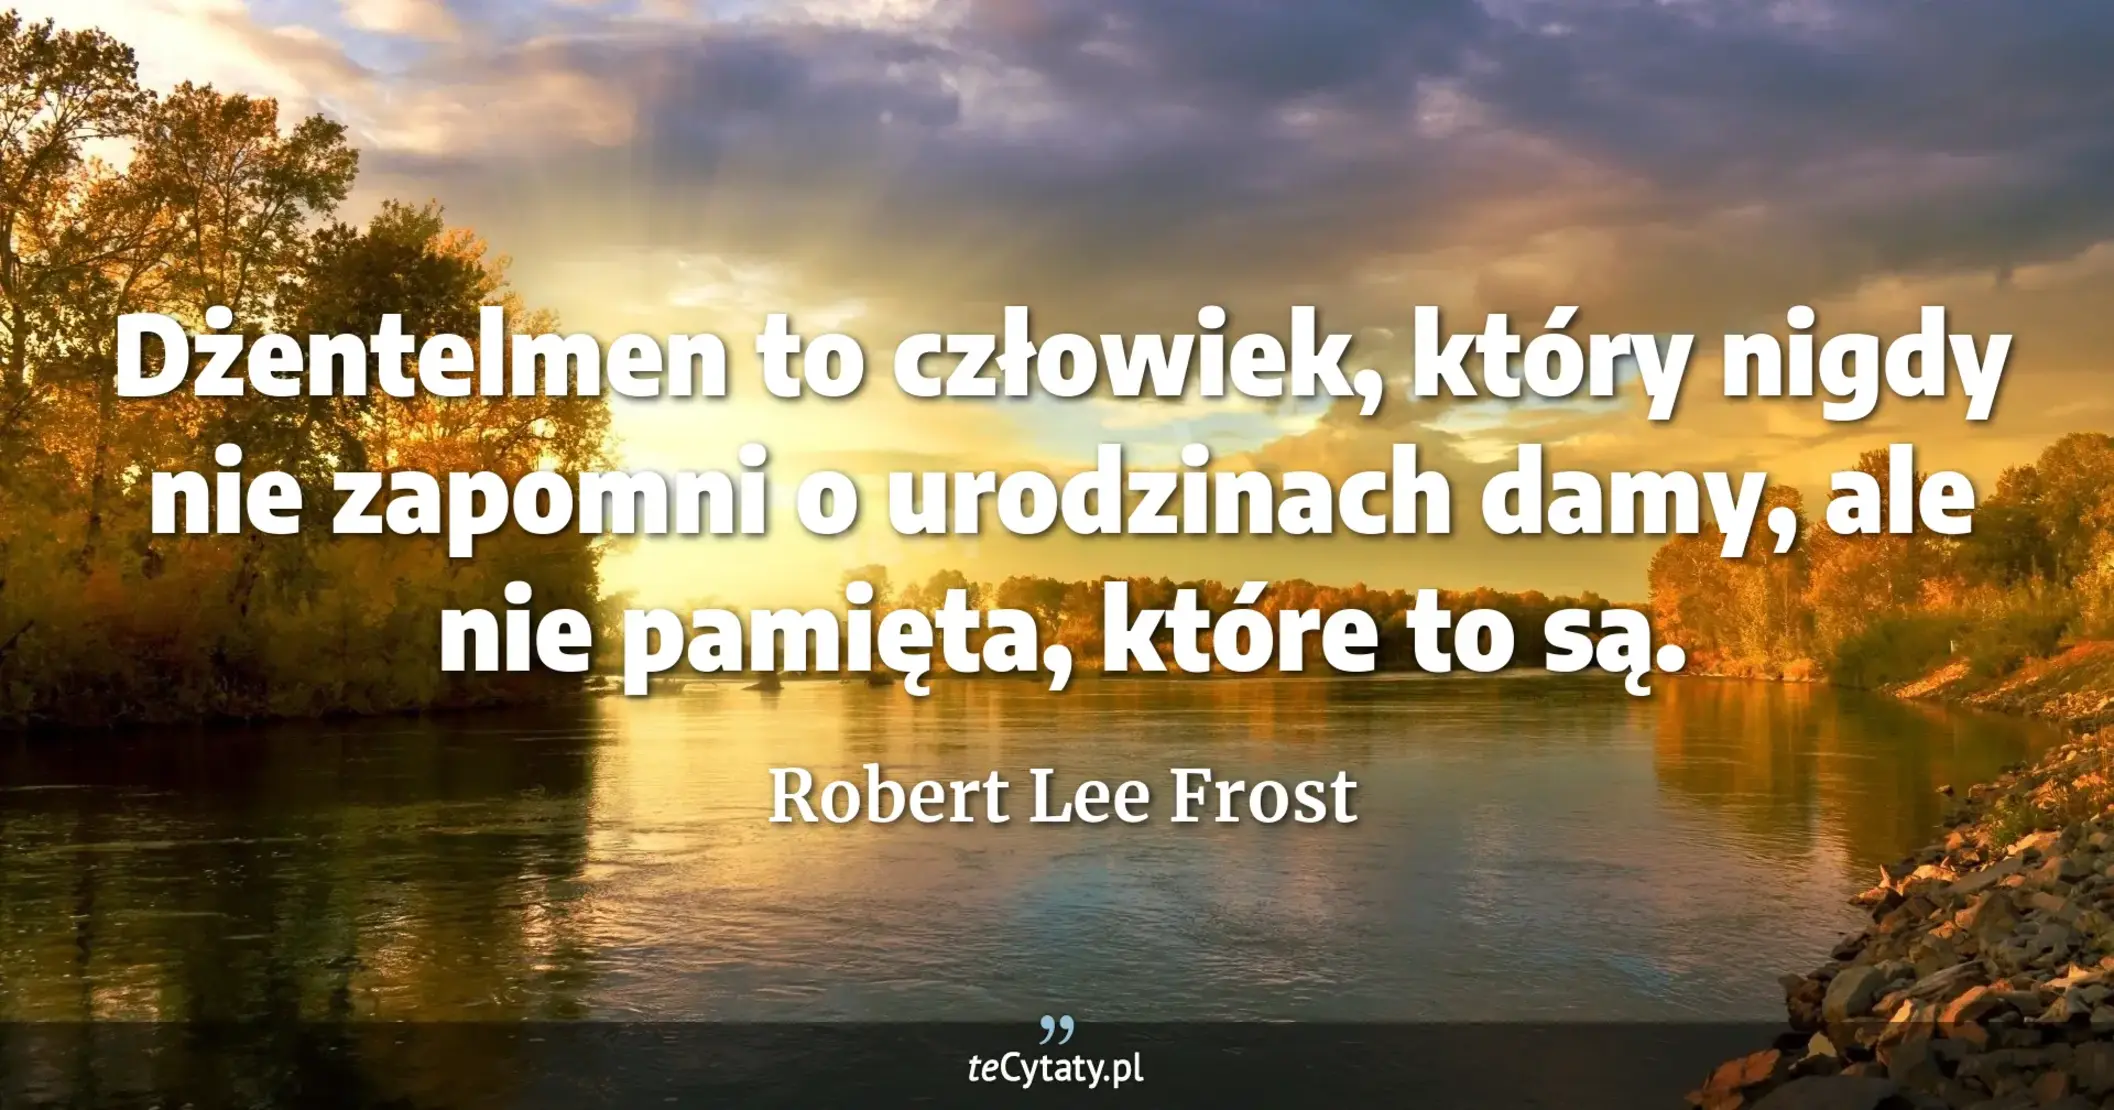 Dżentelmen to człowiek, który nigdy nie zapomni o urodzinach damy, ale nie pamięta, które to są. - Robert Lee Frost